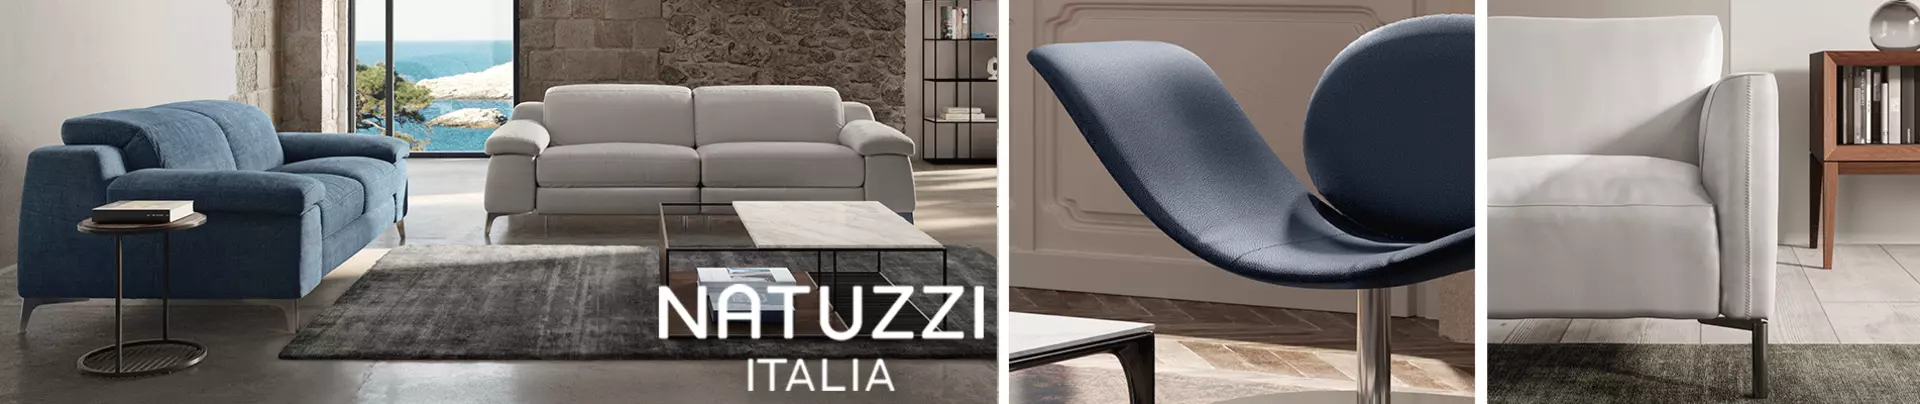 Natuzzi Italia - Synonym für italienisches Wohndesign. Jetzt bei Möbel Inhofer entdecken!